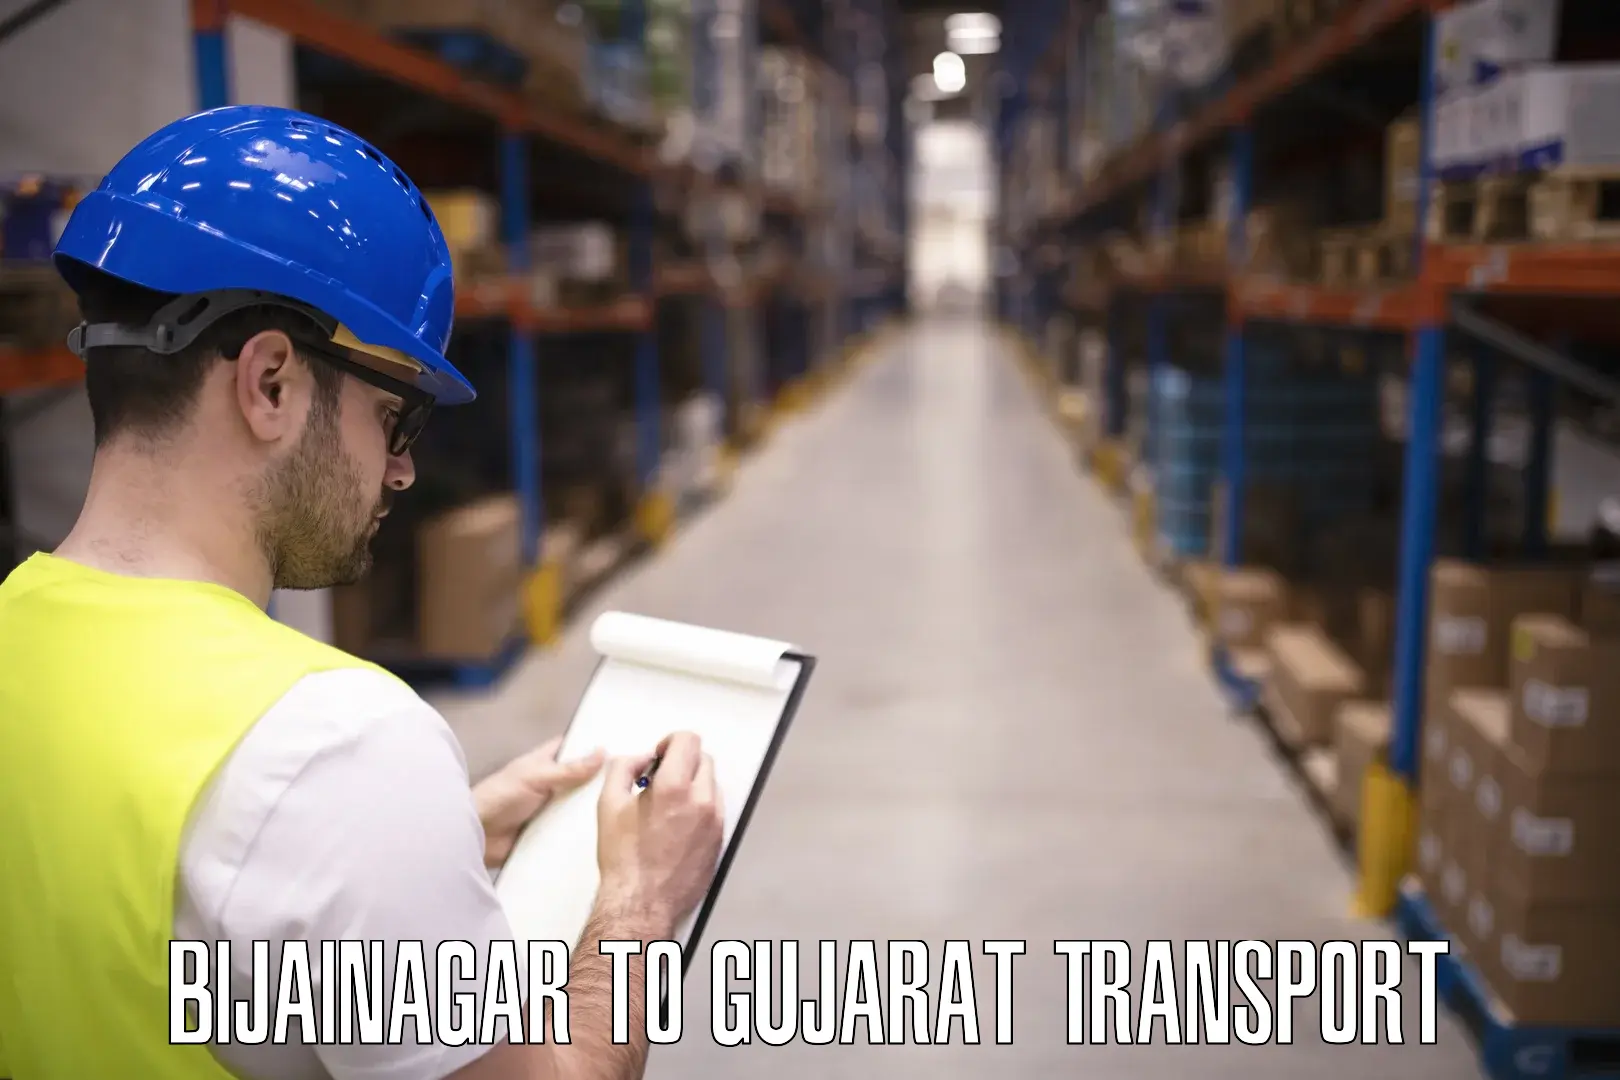 Truck transport companies in India Bijainagar to IIIT Surat